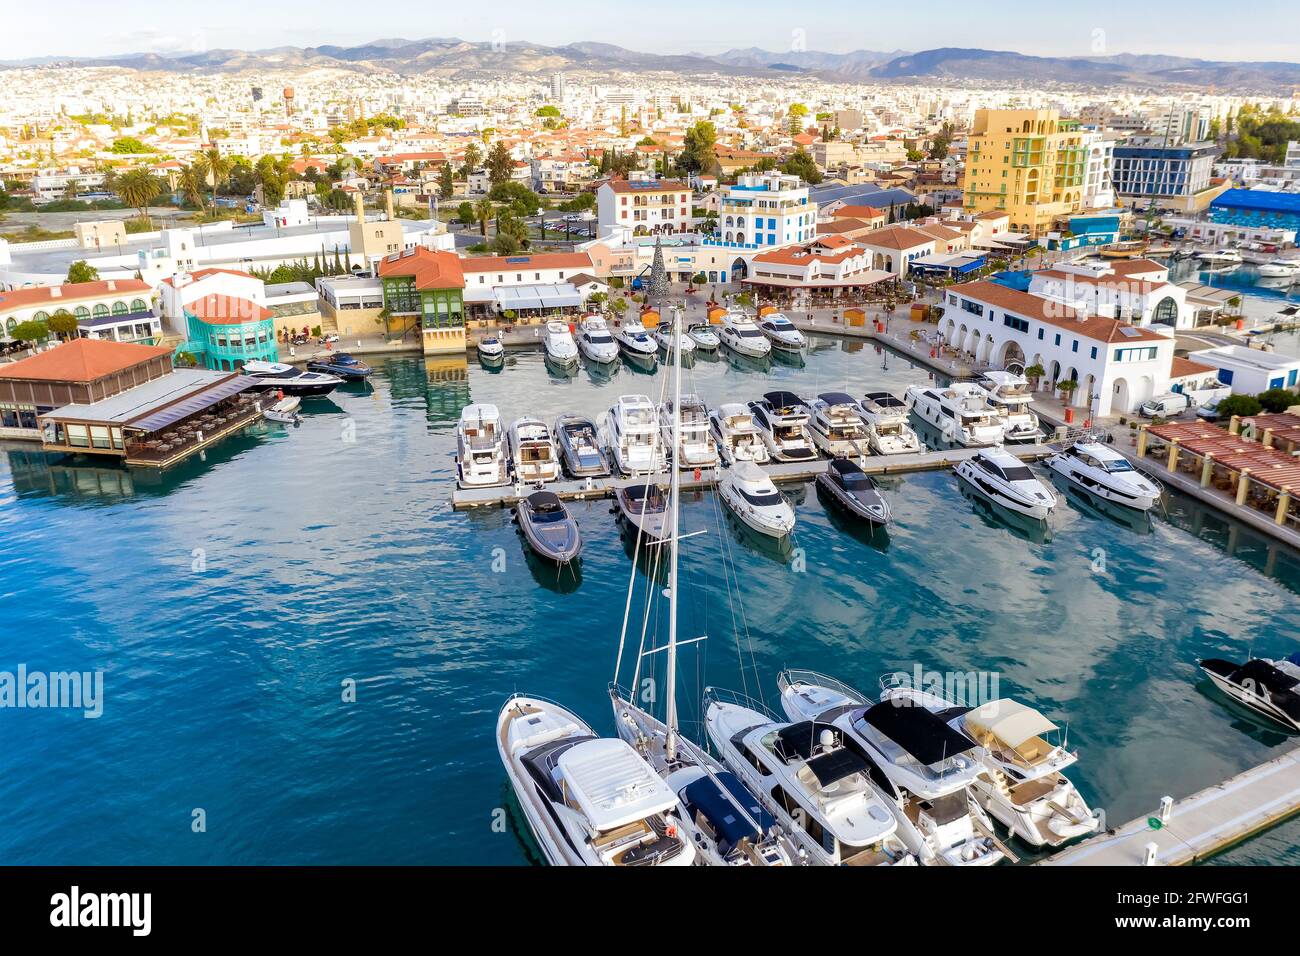 Caffè e ristoranti sul lungomare nel porto turistico di Limassol, vista aerea Foto Stock